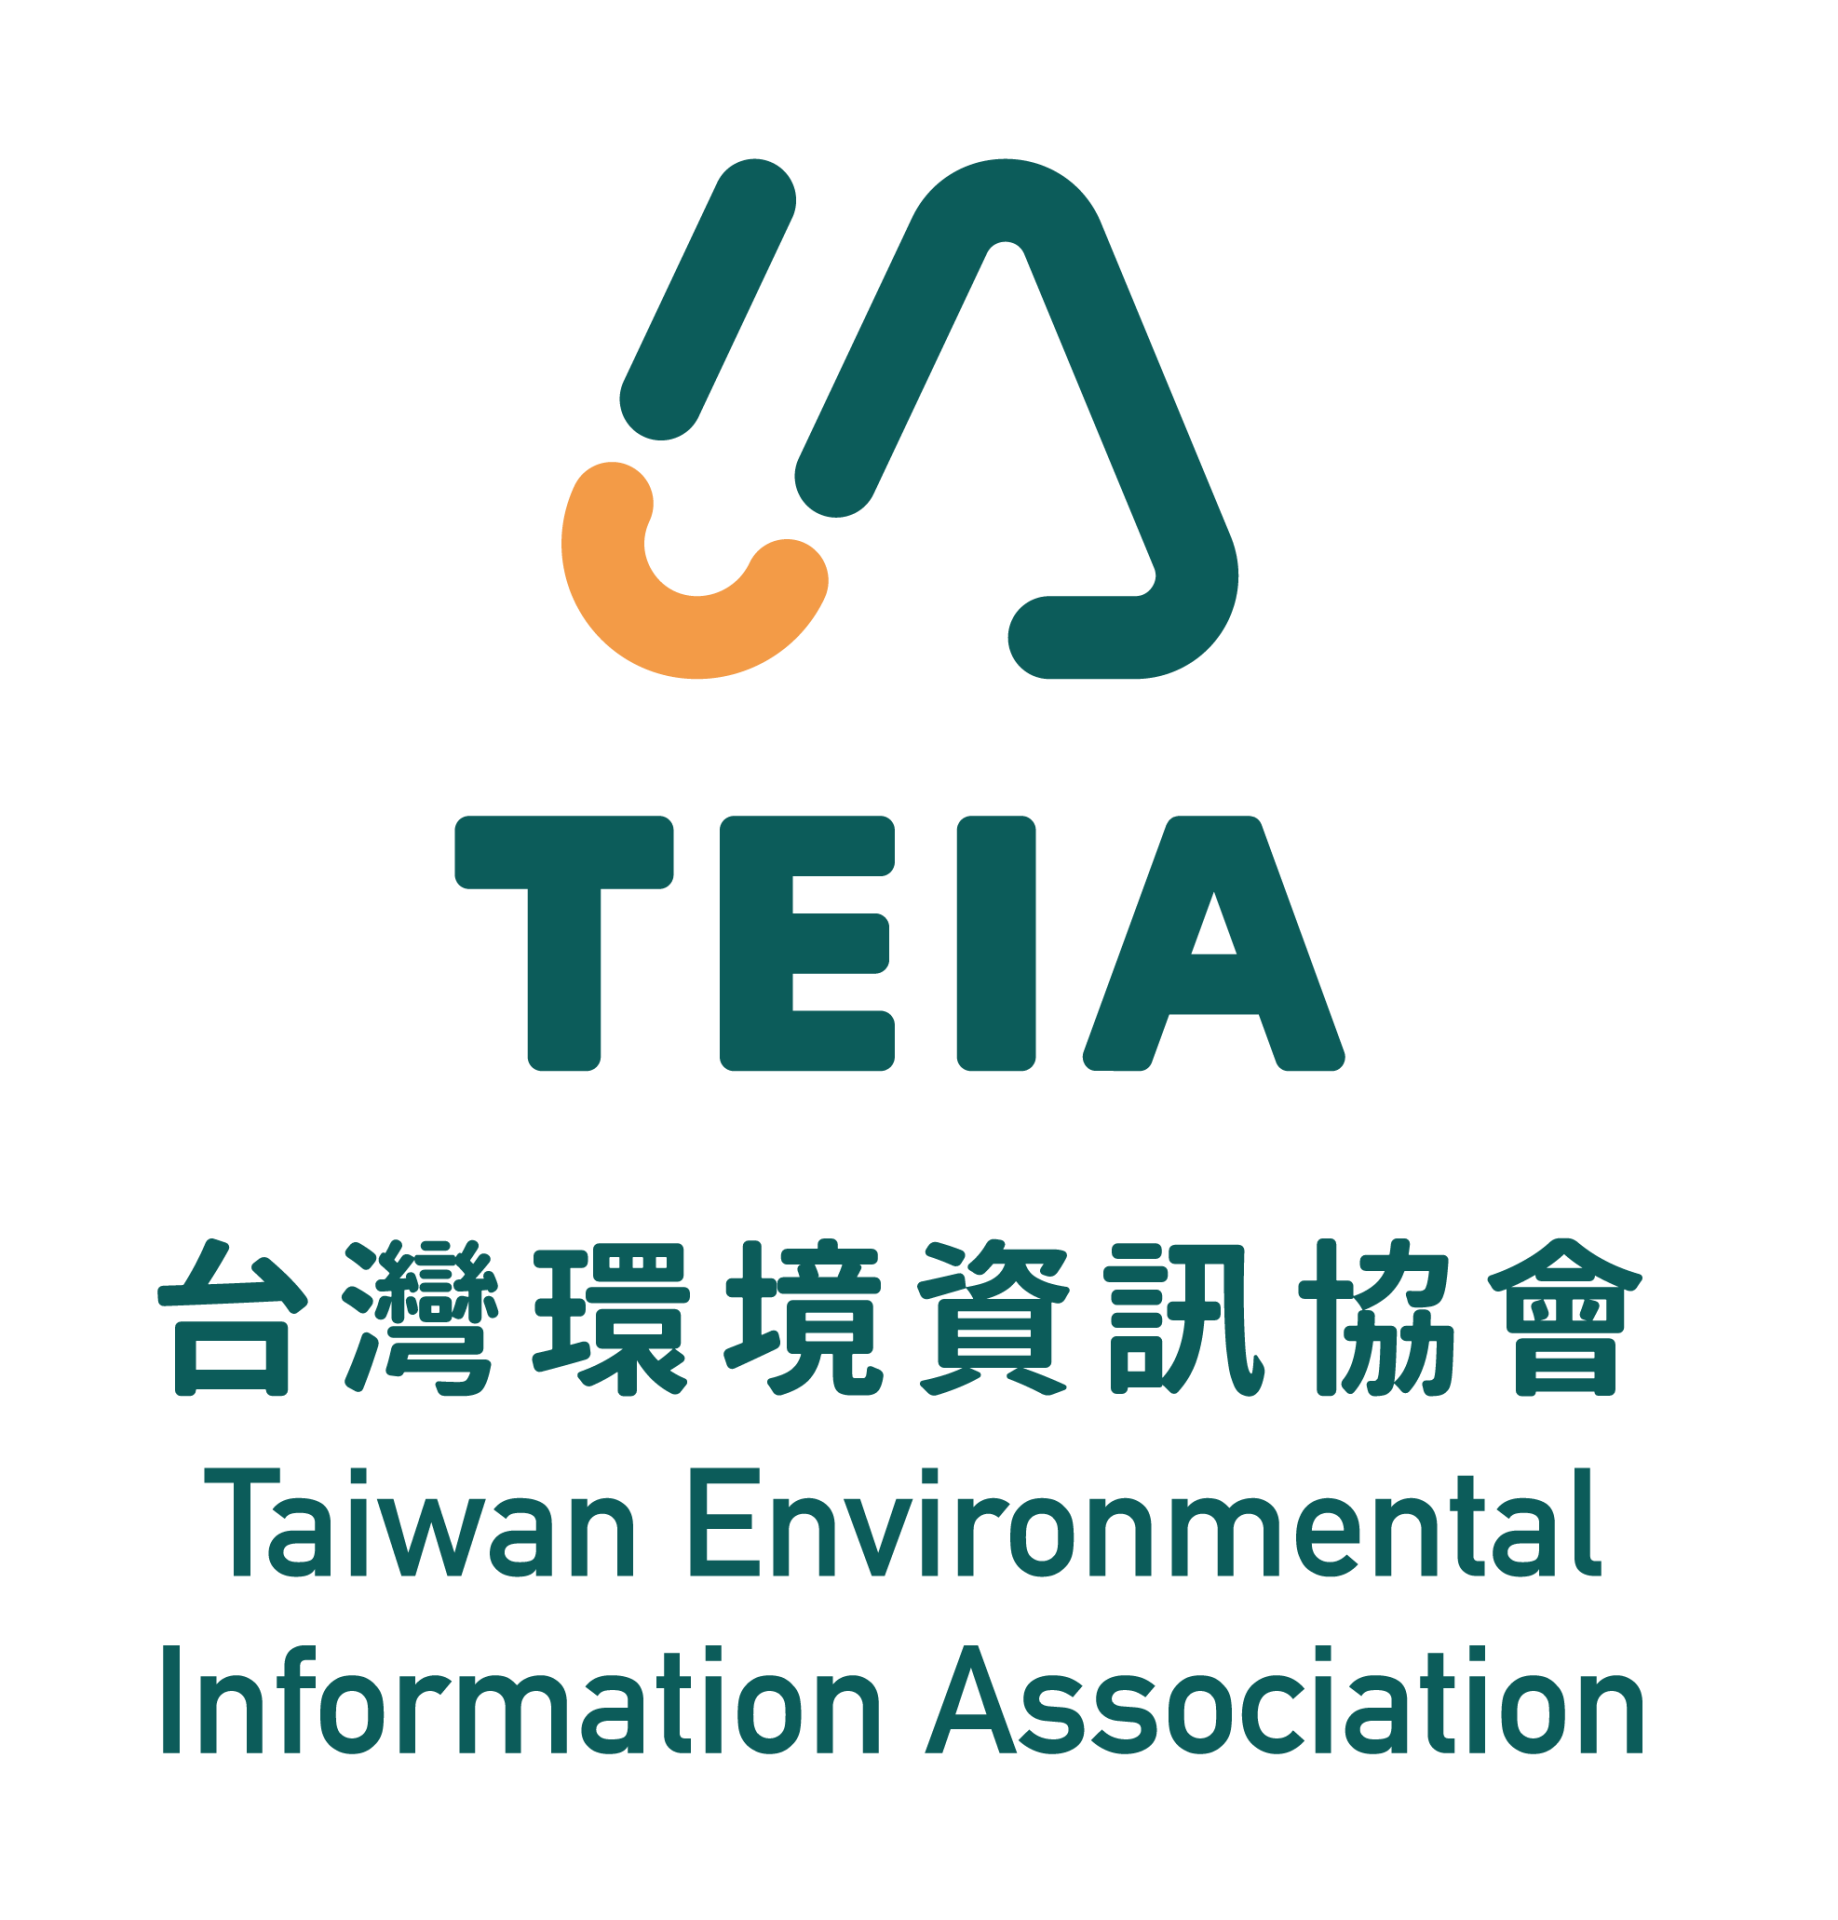 TEIA 台灣環境資訊協會